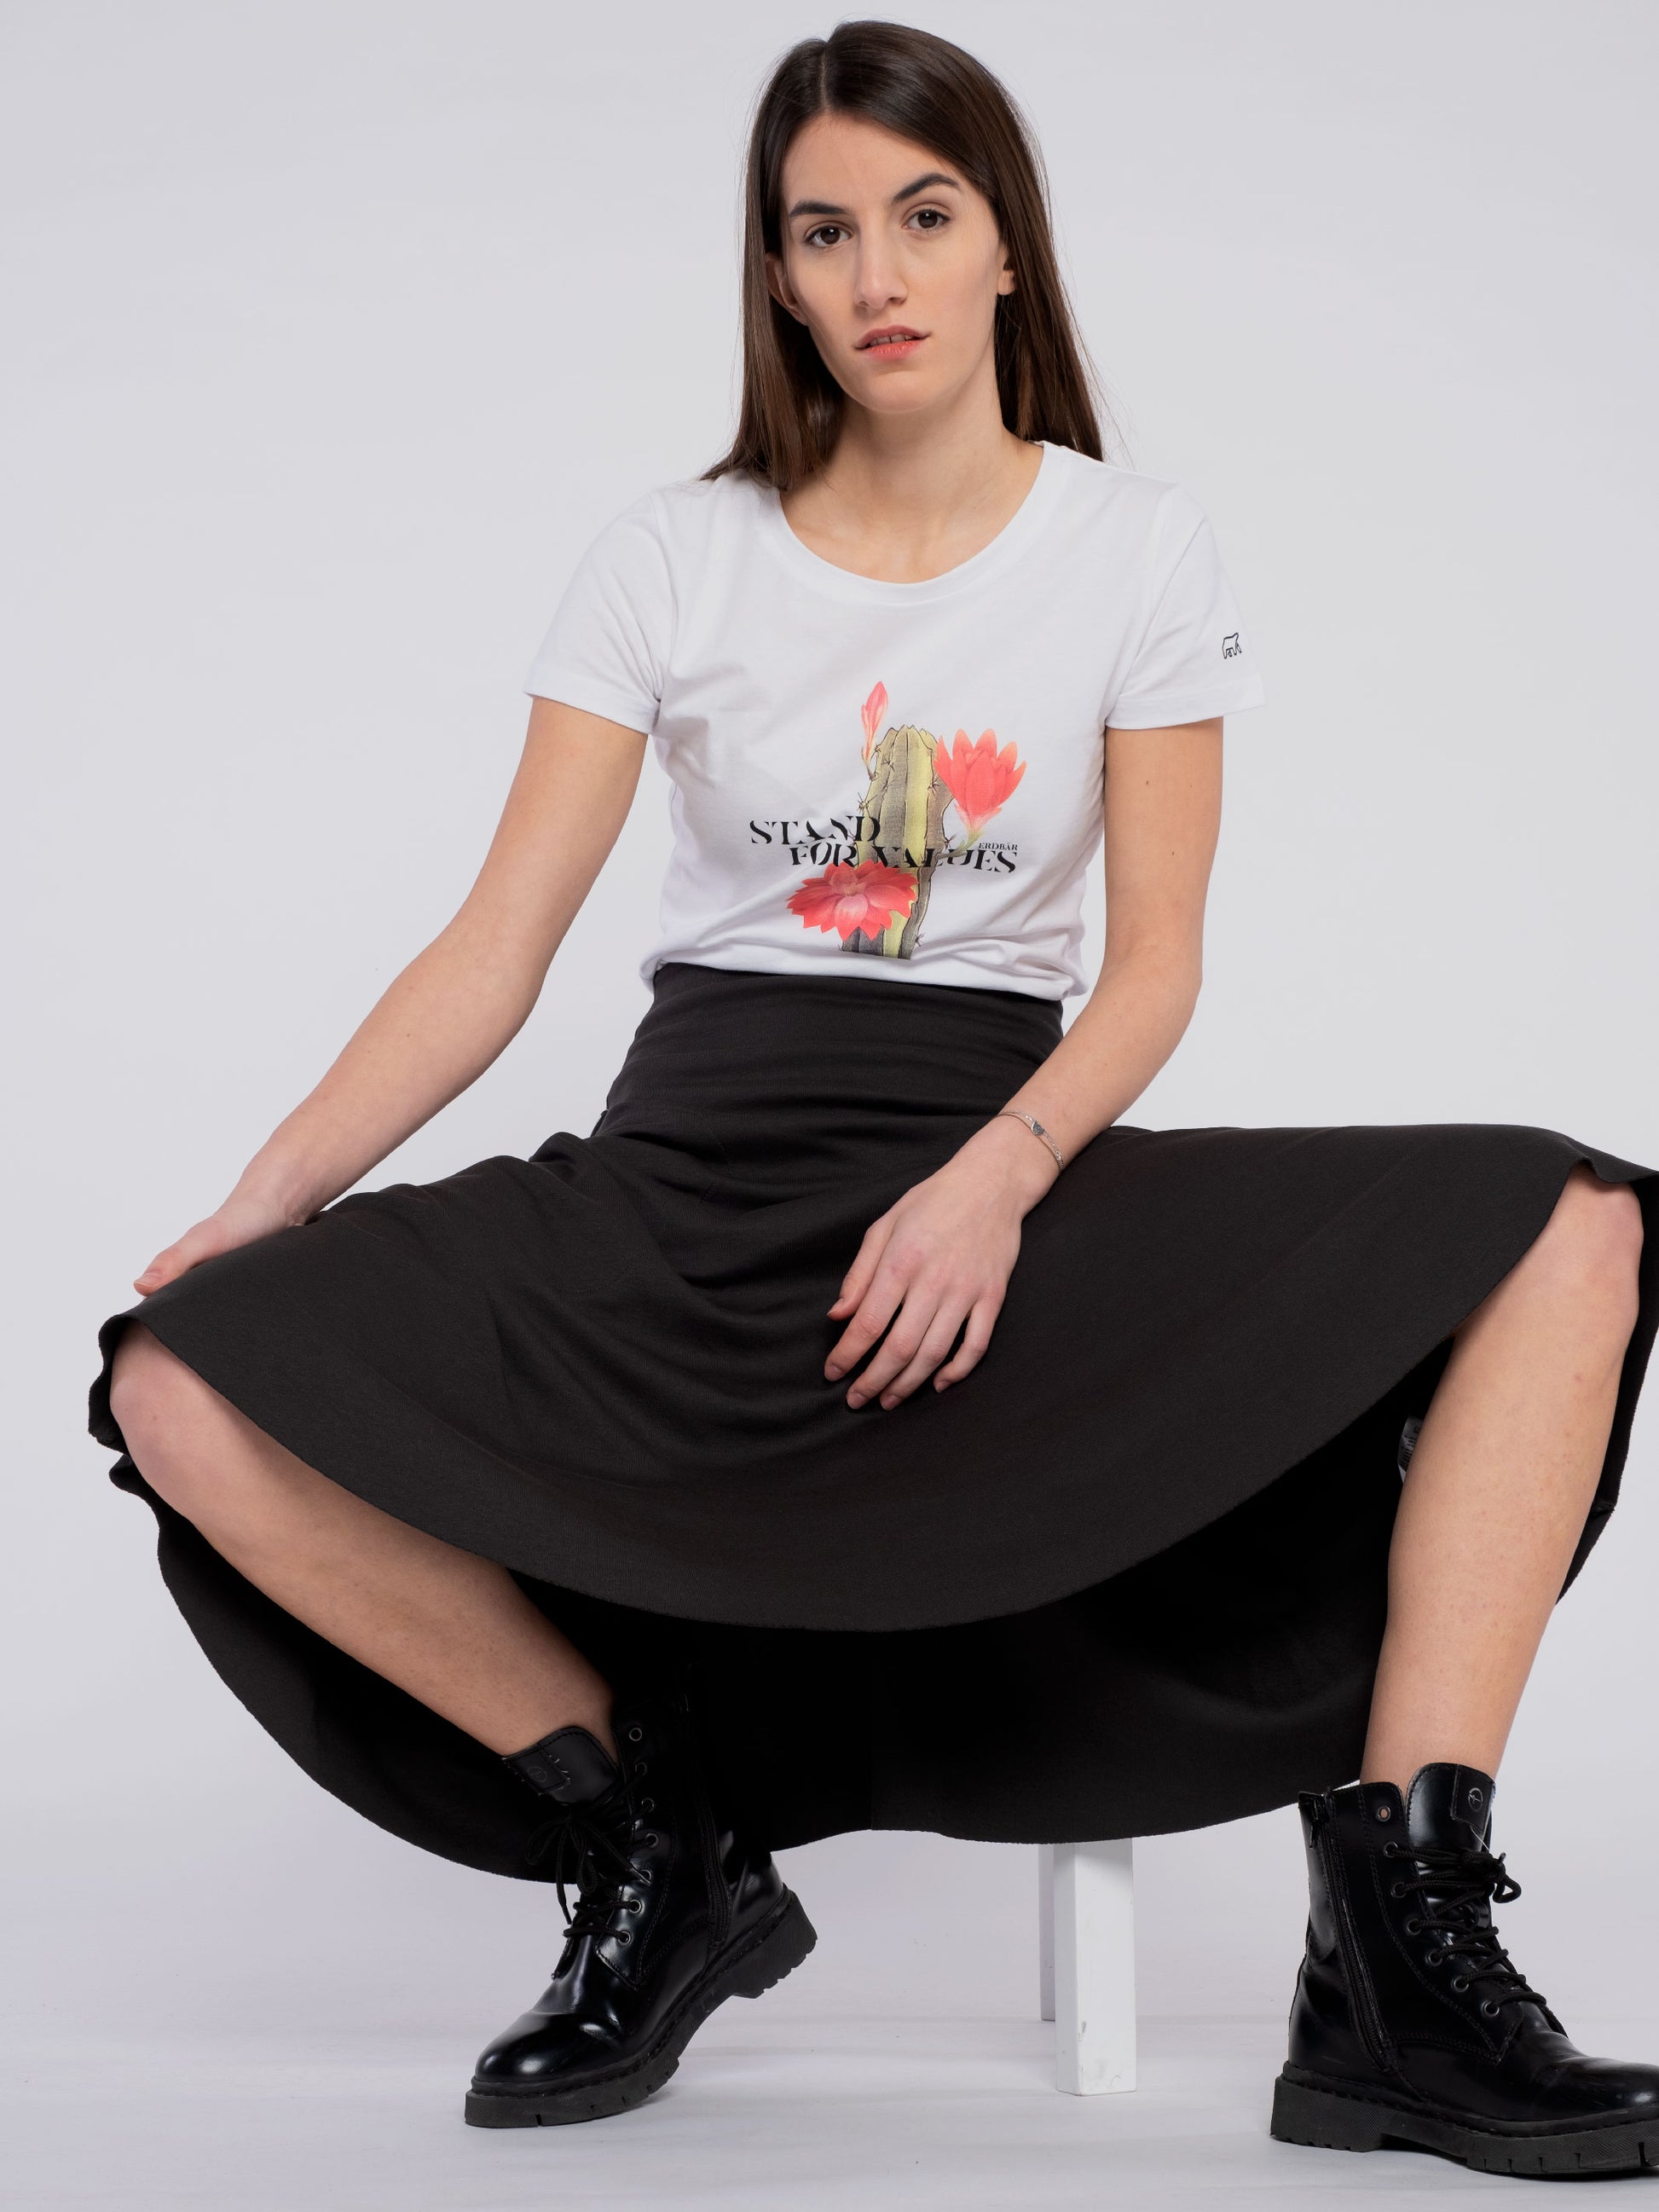 Women T-Shirt (classic) stand for values - ERDBÄR #Worldchanger